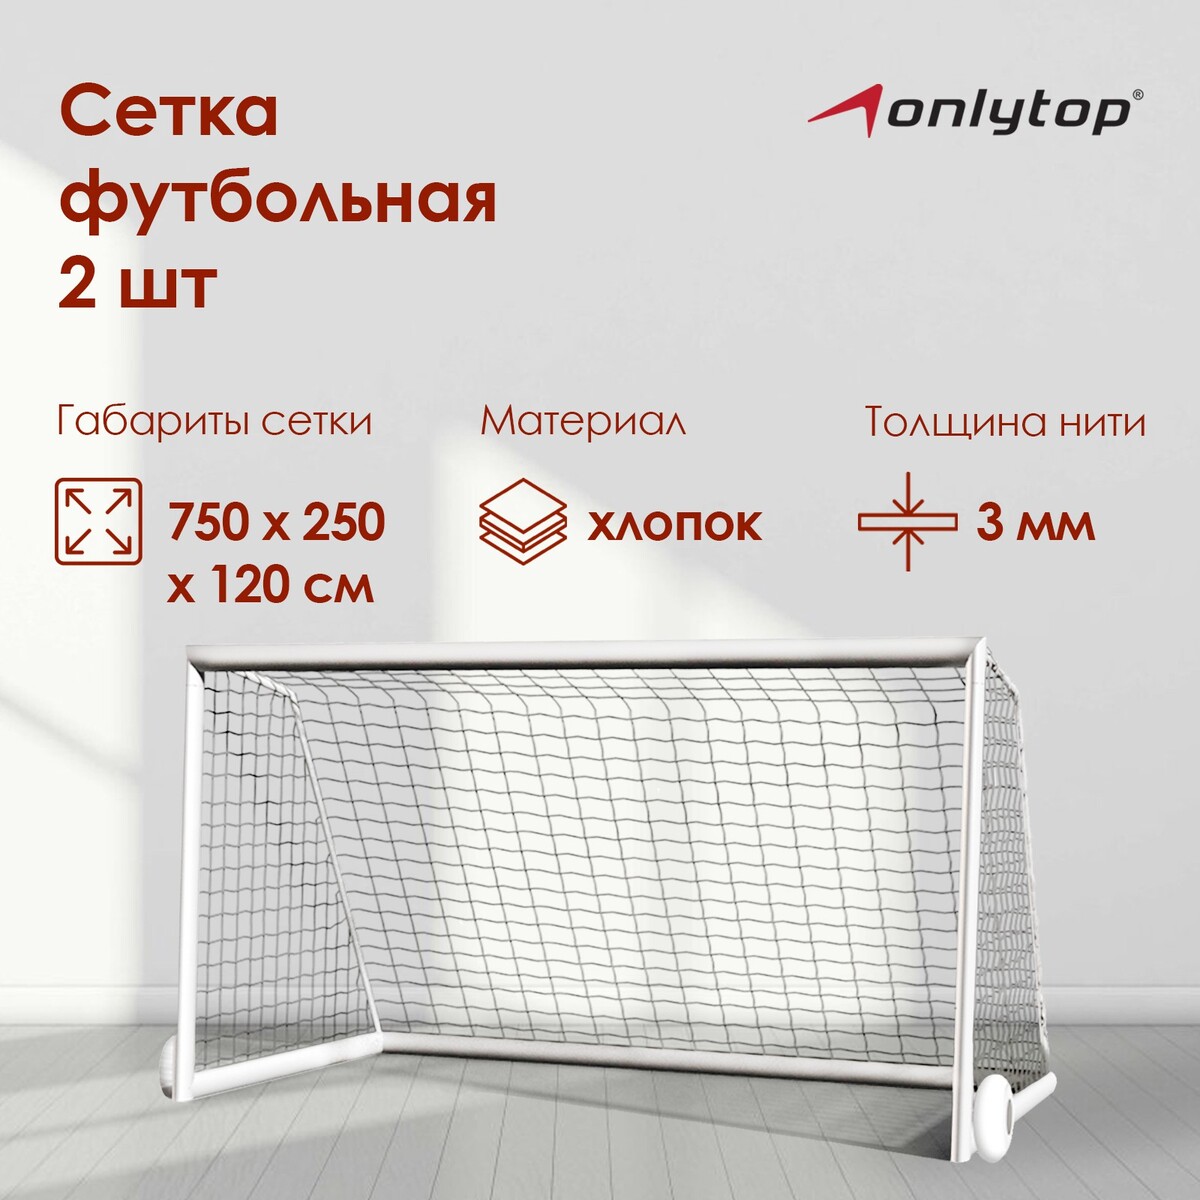 Сетка футбольная onlytop, 7,32х2,44 м, нить 3 мм, 2 шт. сетка для переноски мячей onlytop на 6 мячей нить 3 мм